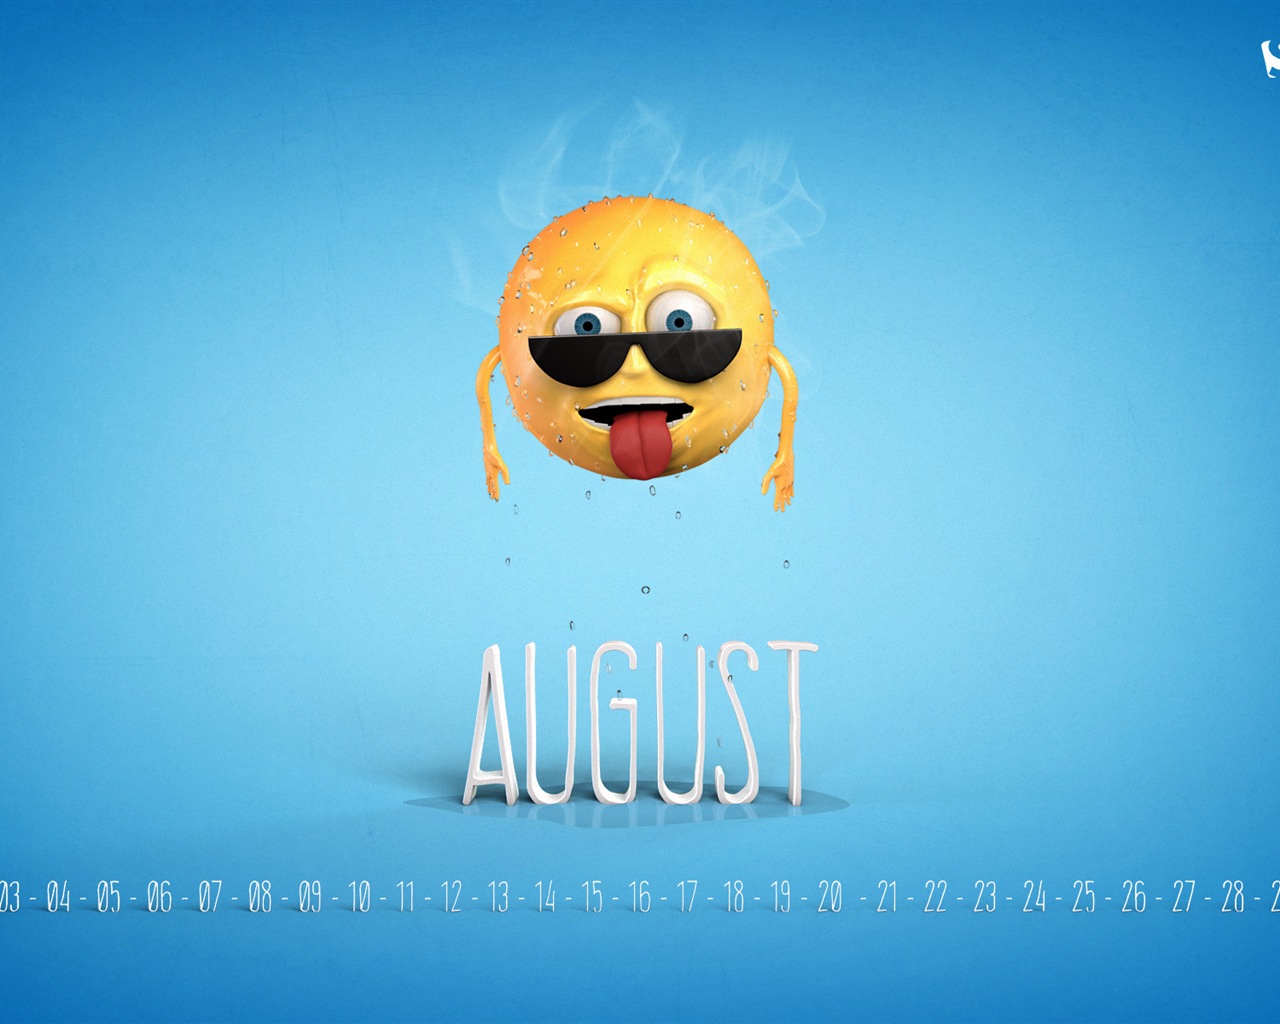 August 2014 calendar wallpaper (2) #11 - 1280x1024